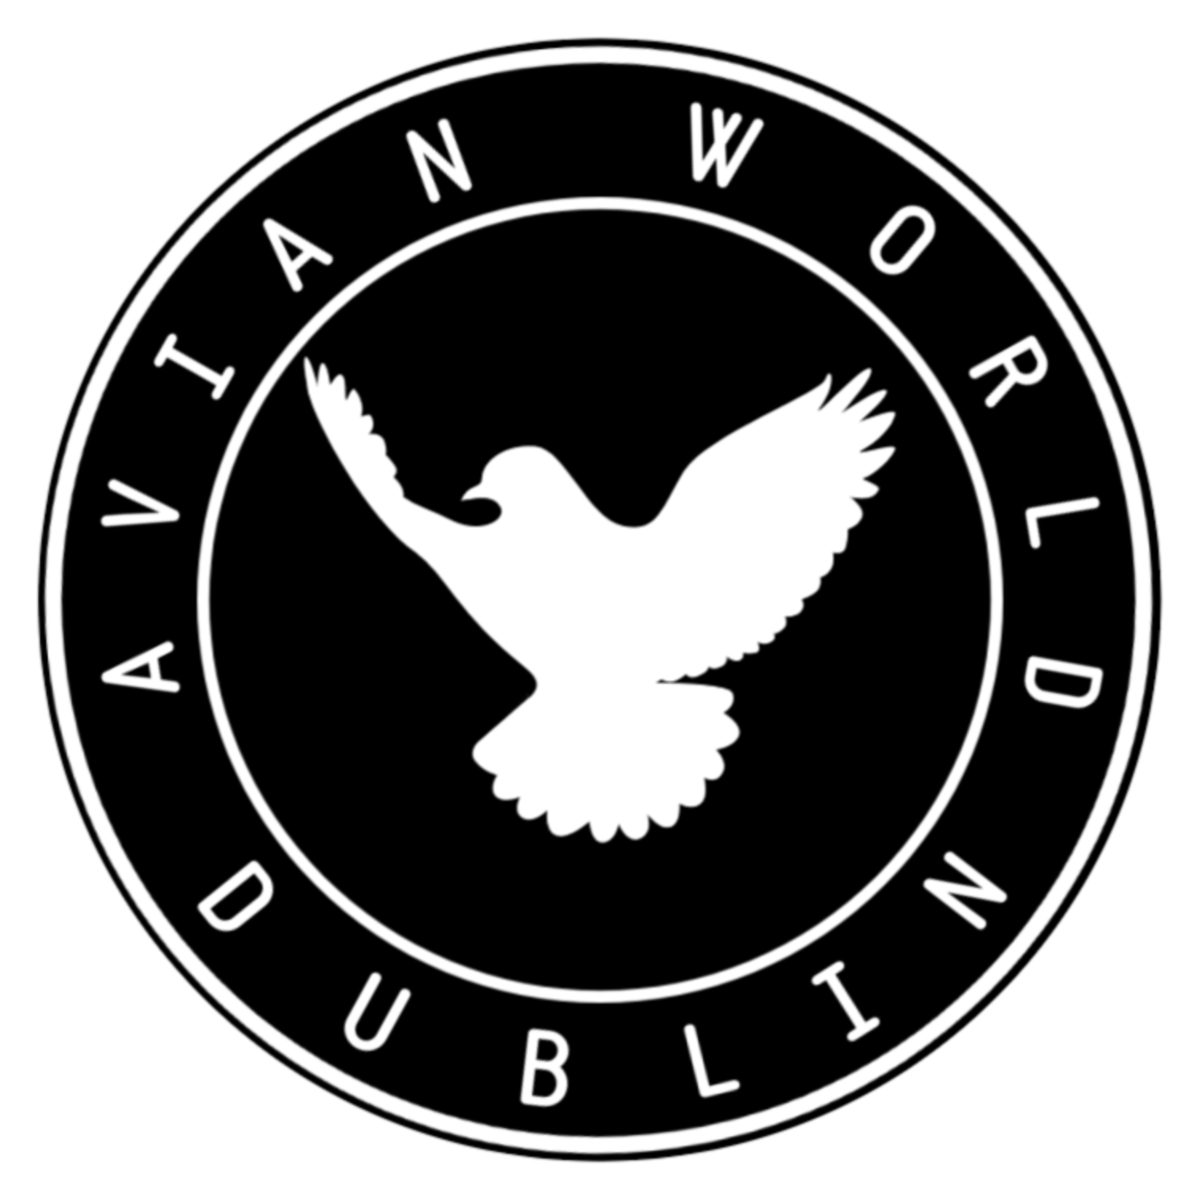 Avian World Dublin